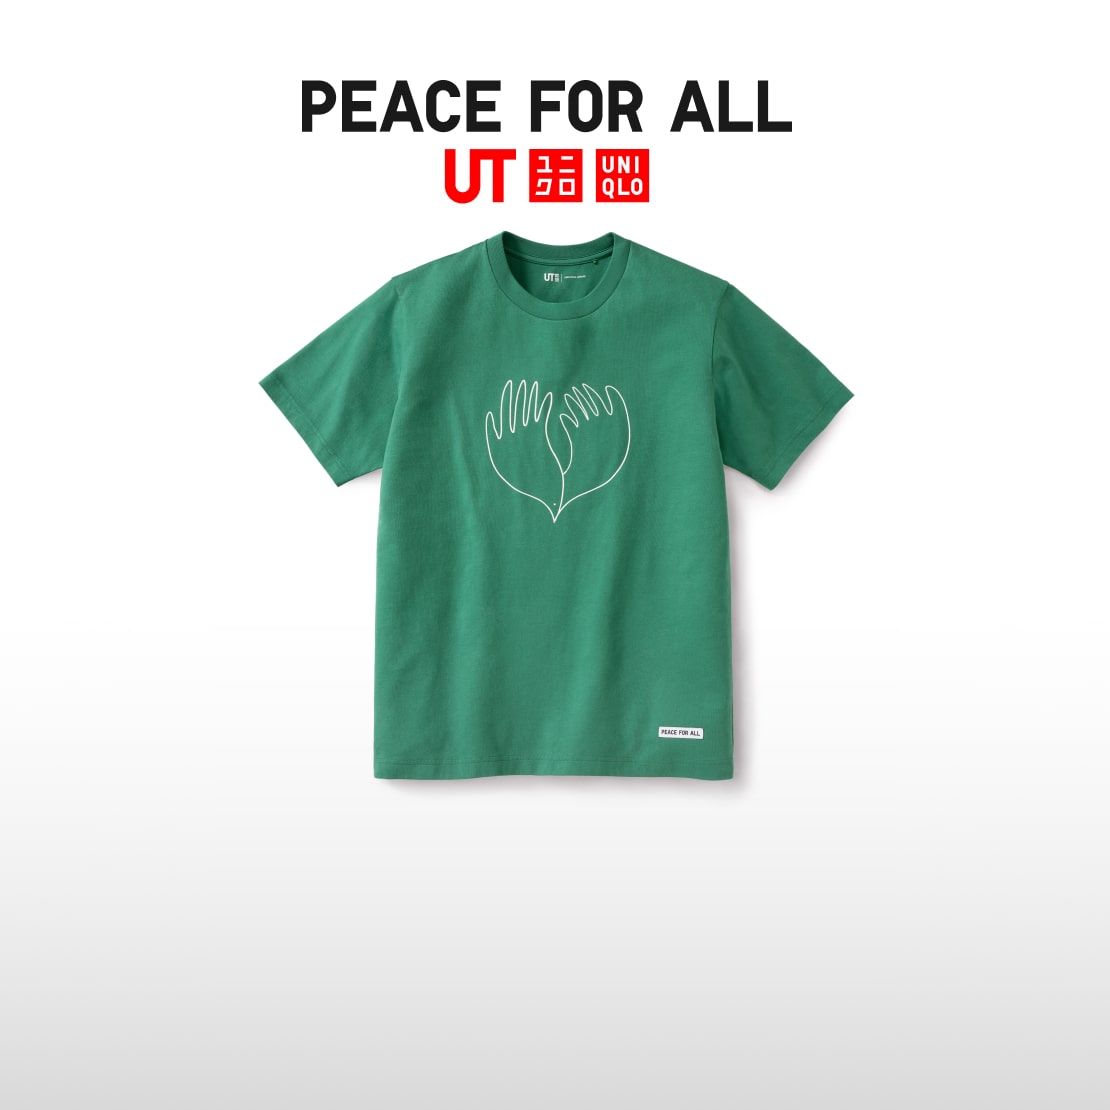 平和を願う
チャリティTシャツ